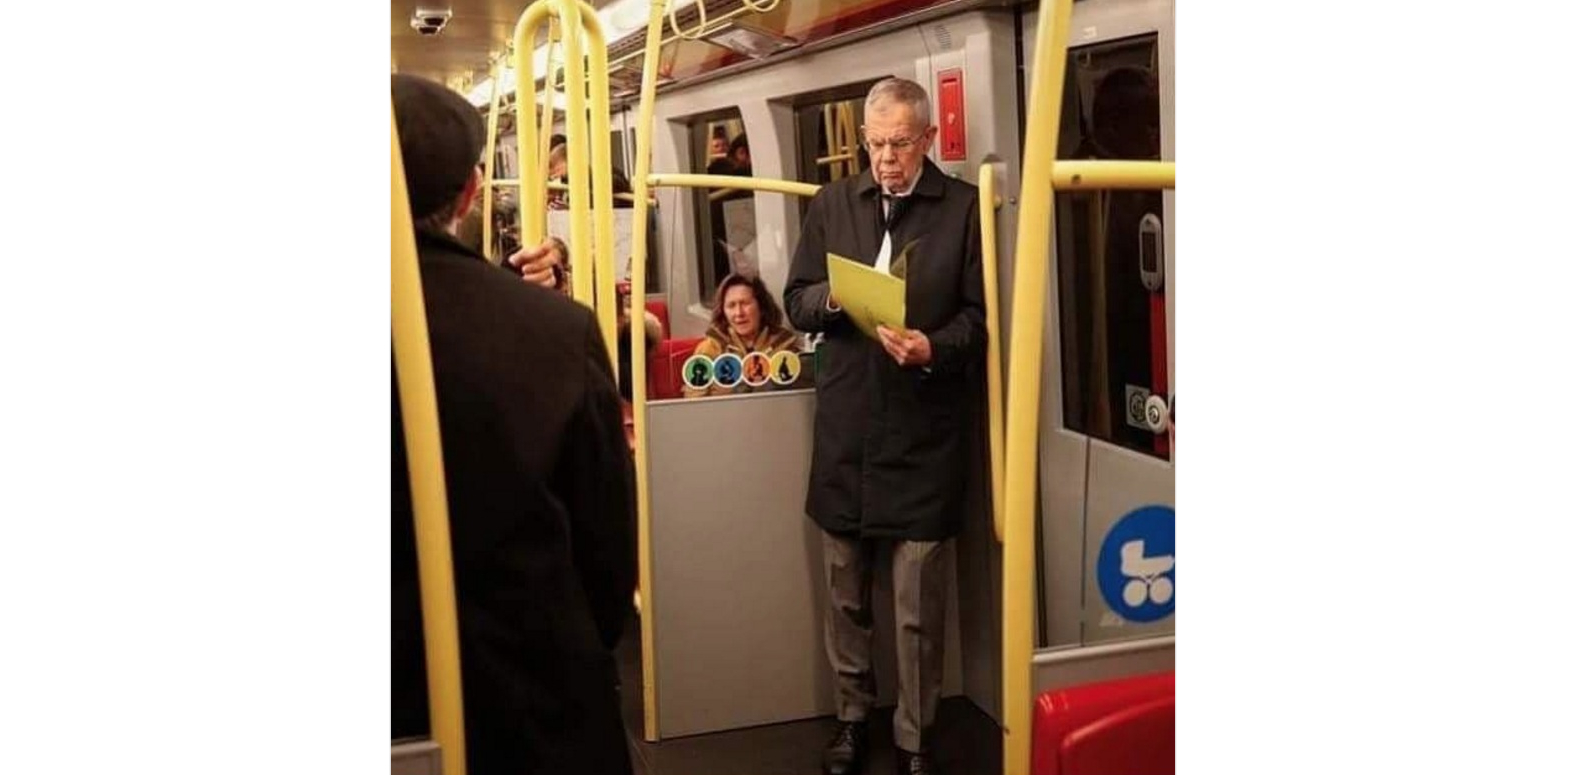 Președintele Austriei în metroul vienez, fără gardă de corp, fără girofar pe vagon ca să se dea la o parte celelalte vagoane